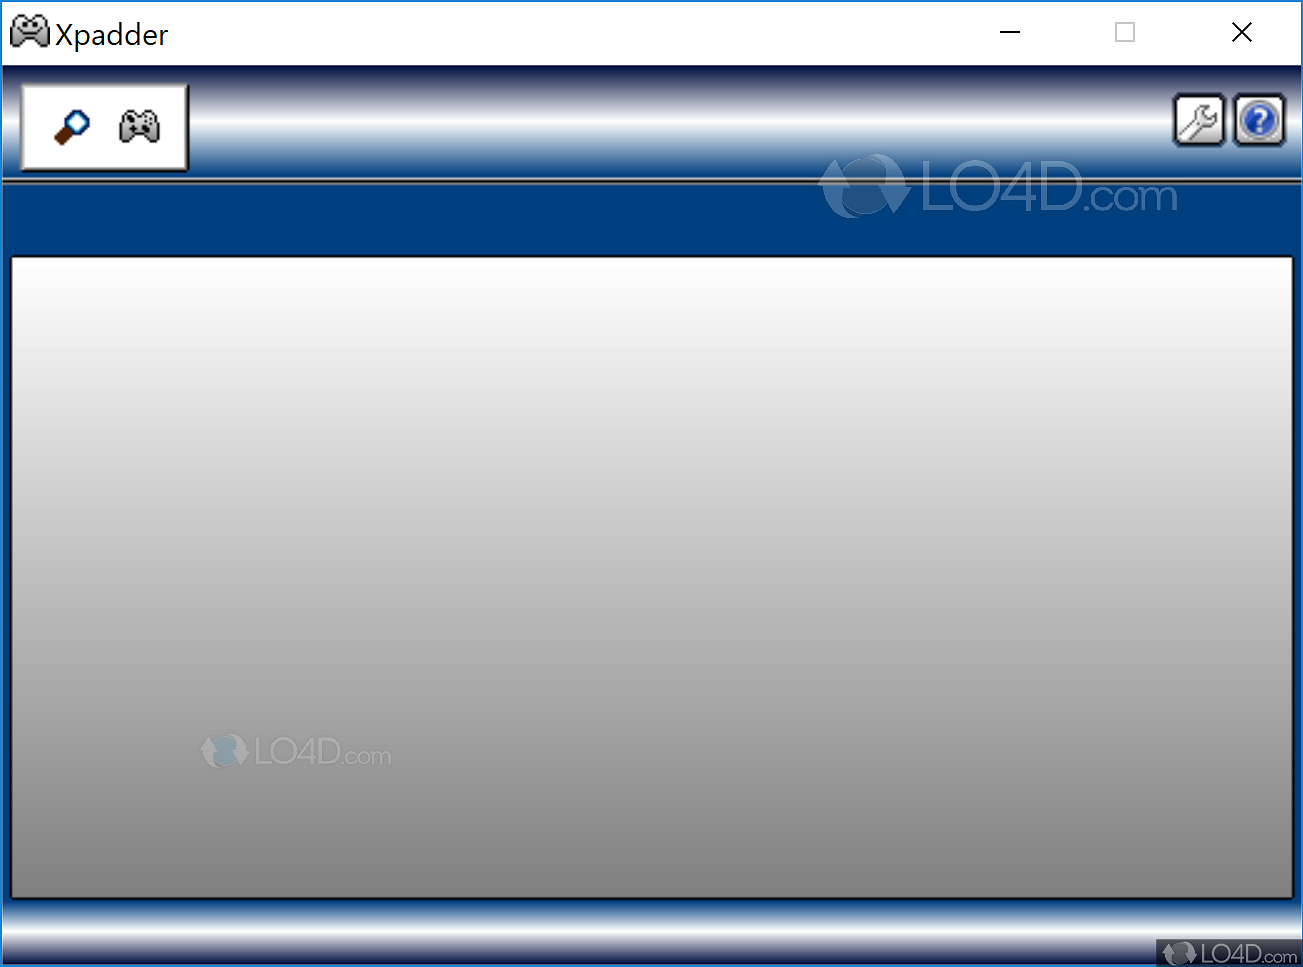 xpadder 5.3 download windows 7 free